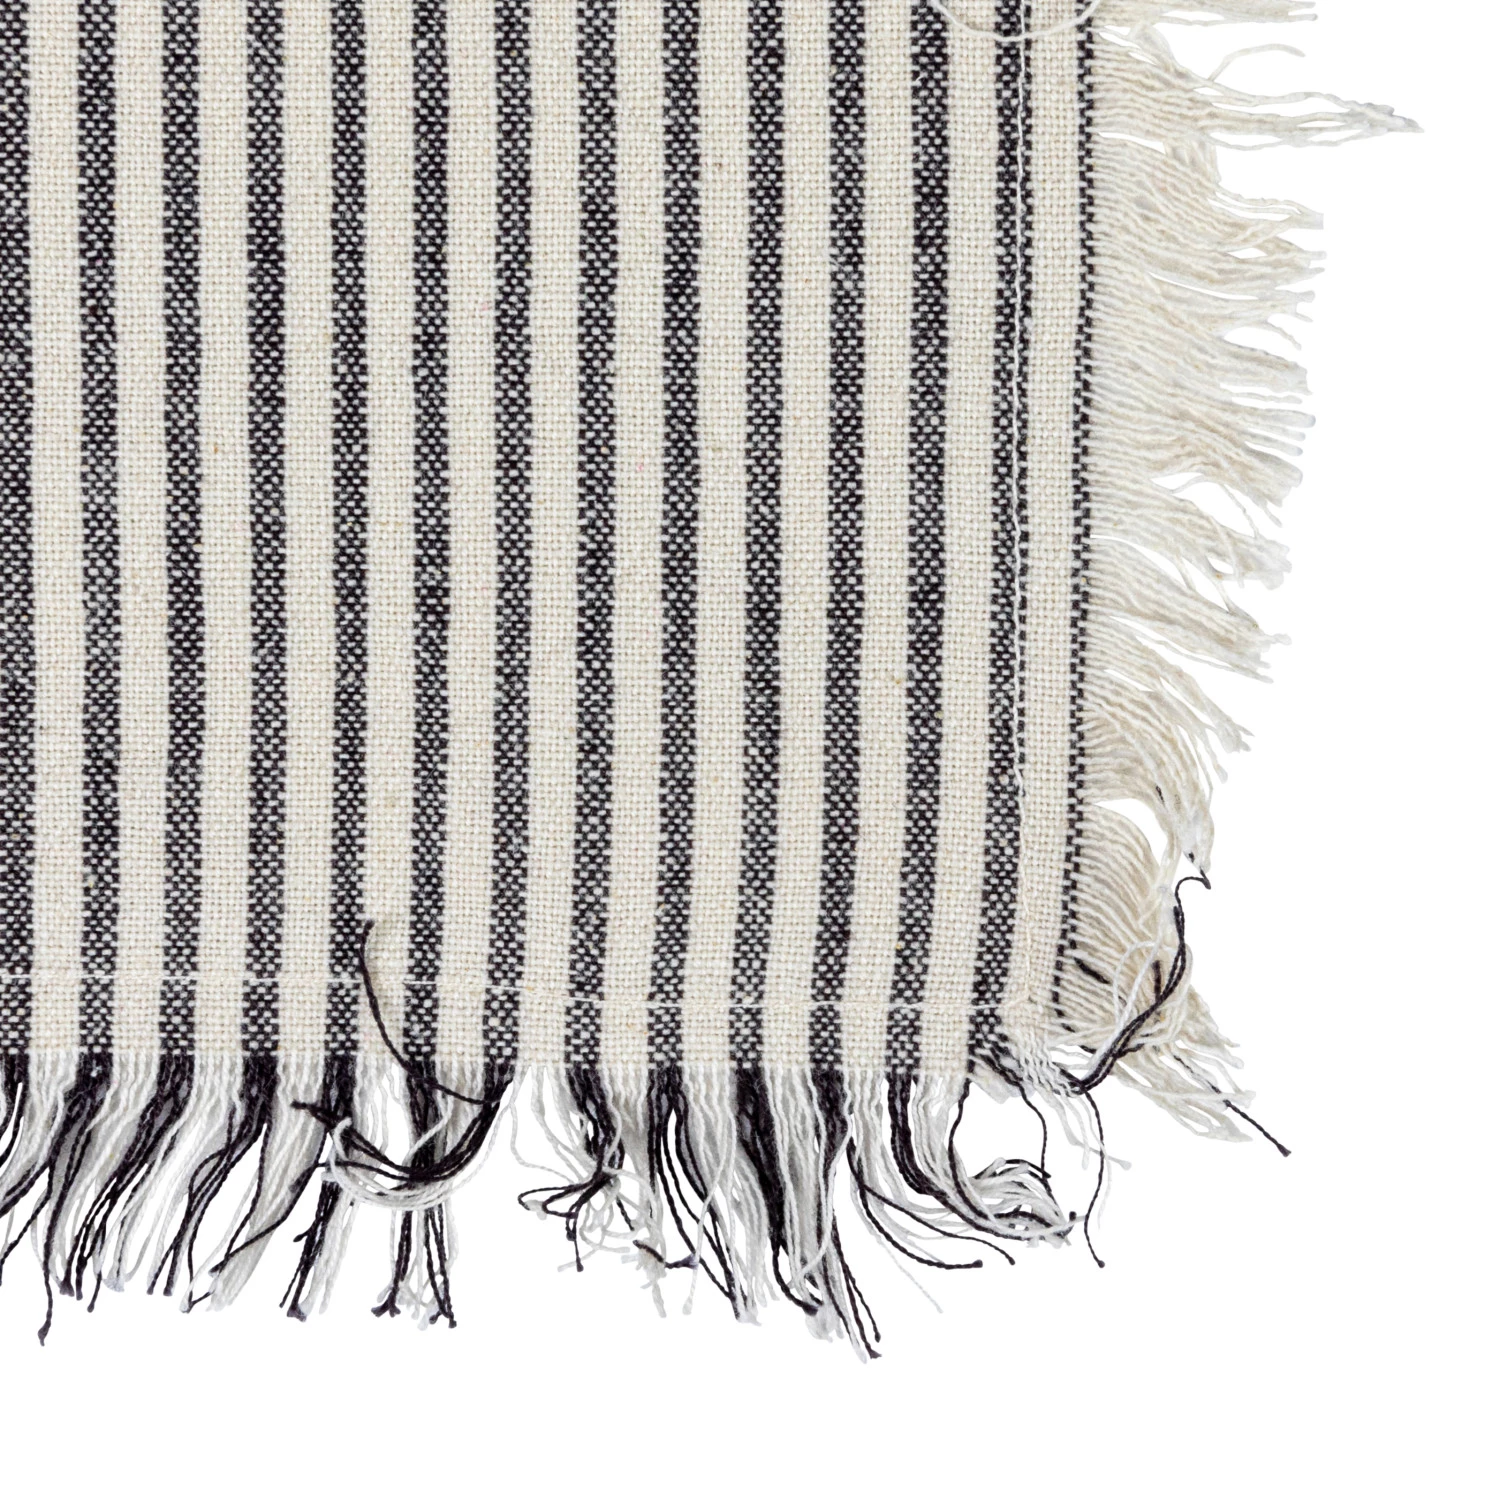 Woven Cotton Tea Towels w/ Stripes & Fringe